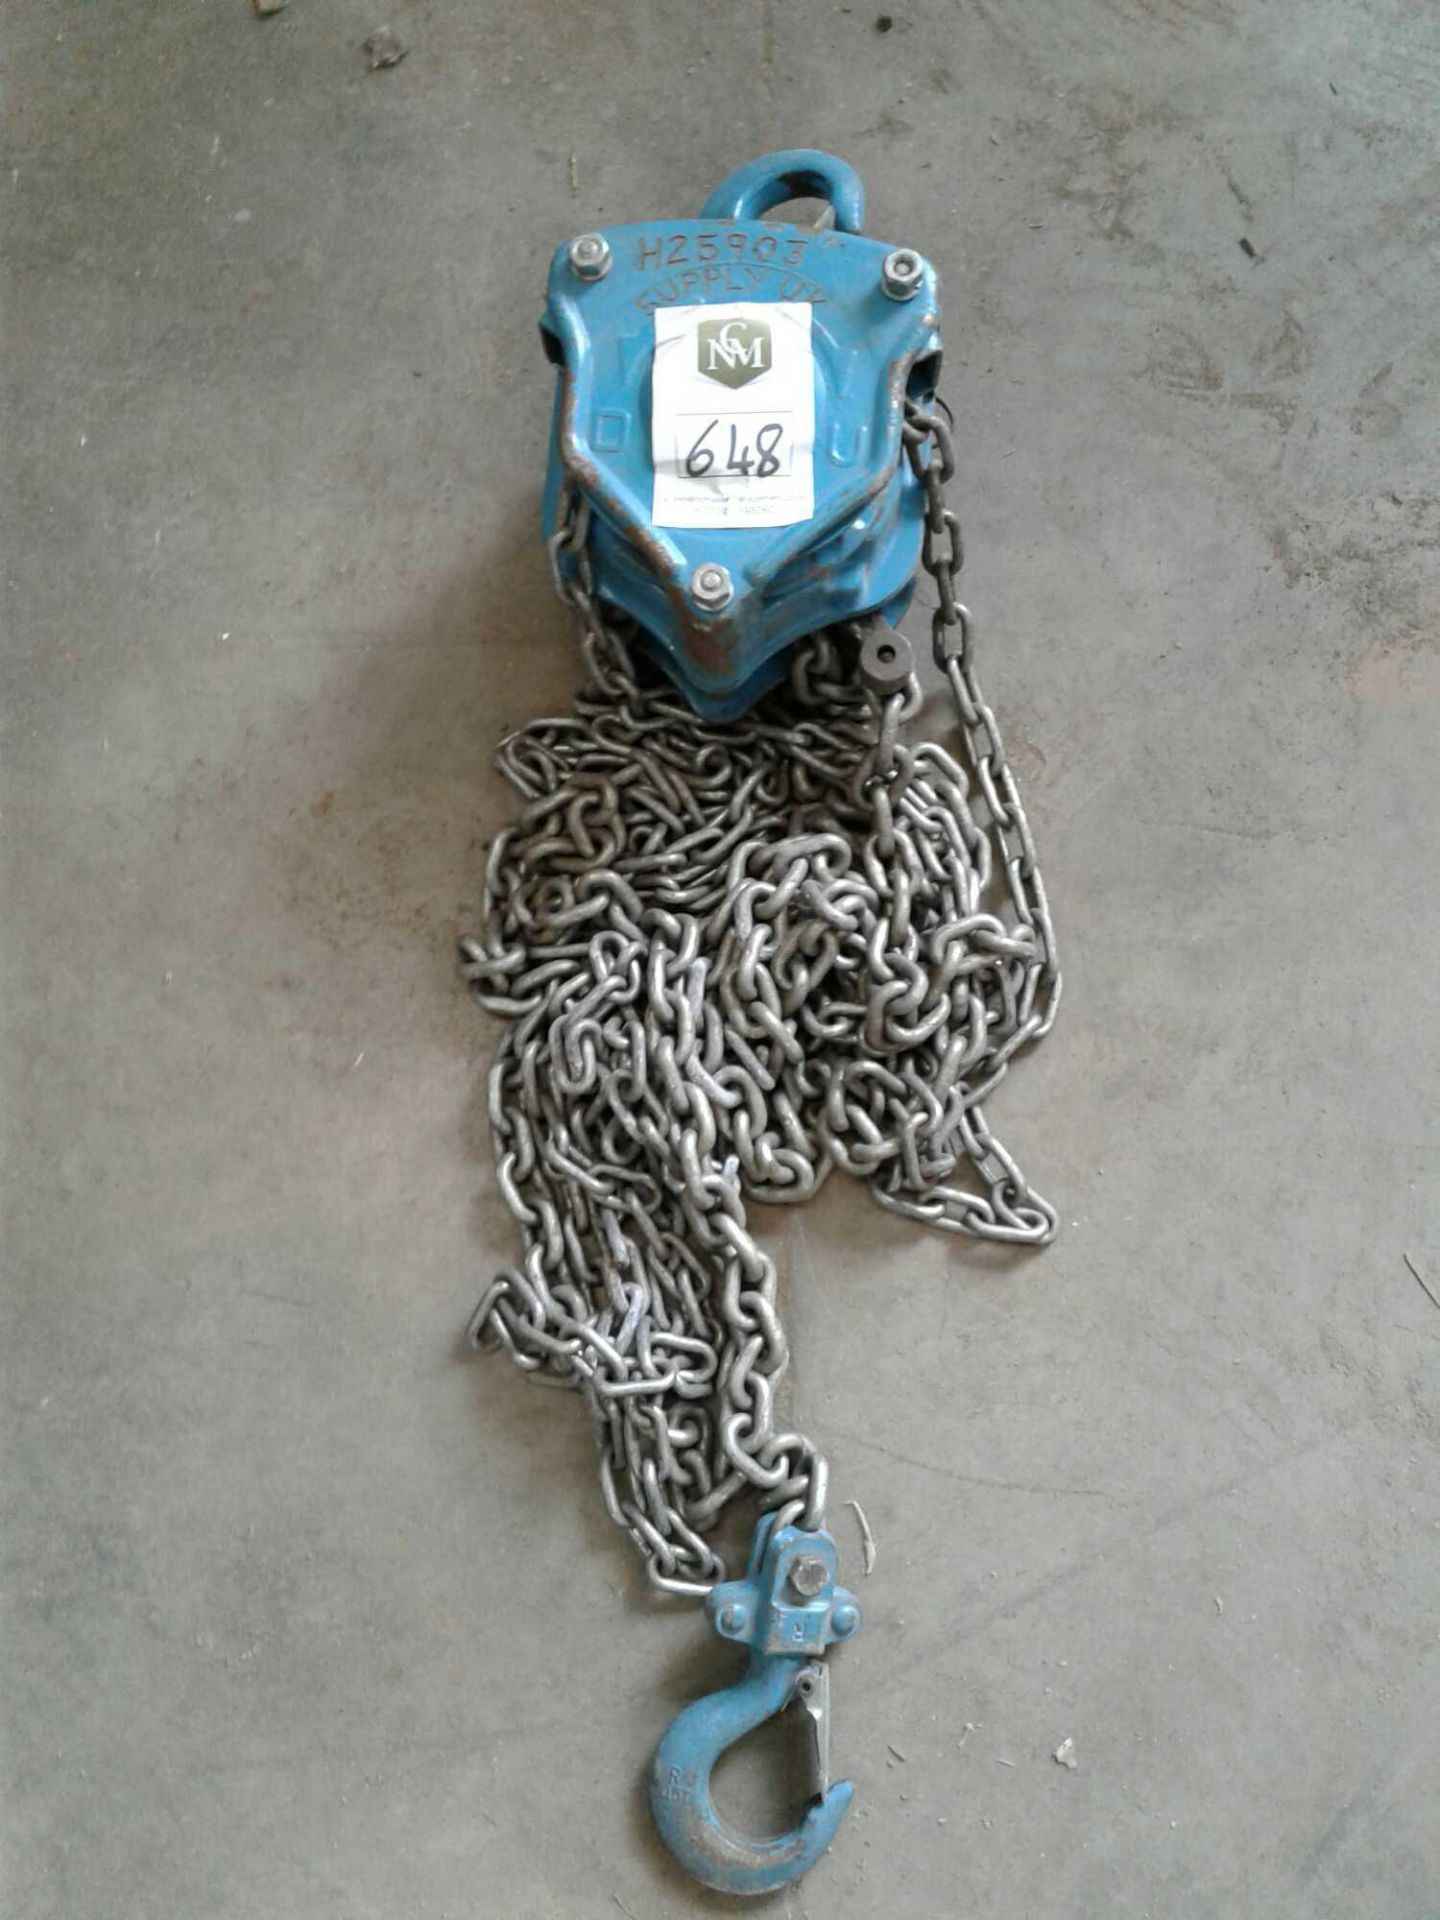 Single point chain hoist 500 kgs Max